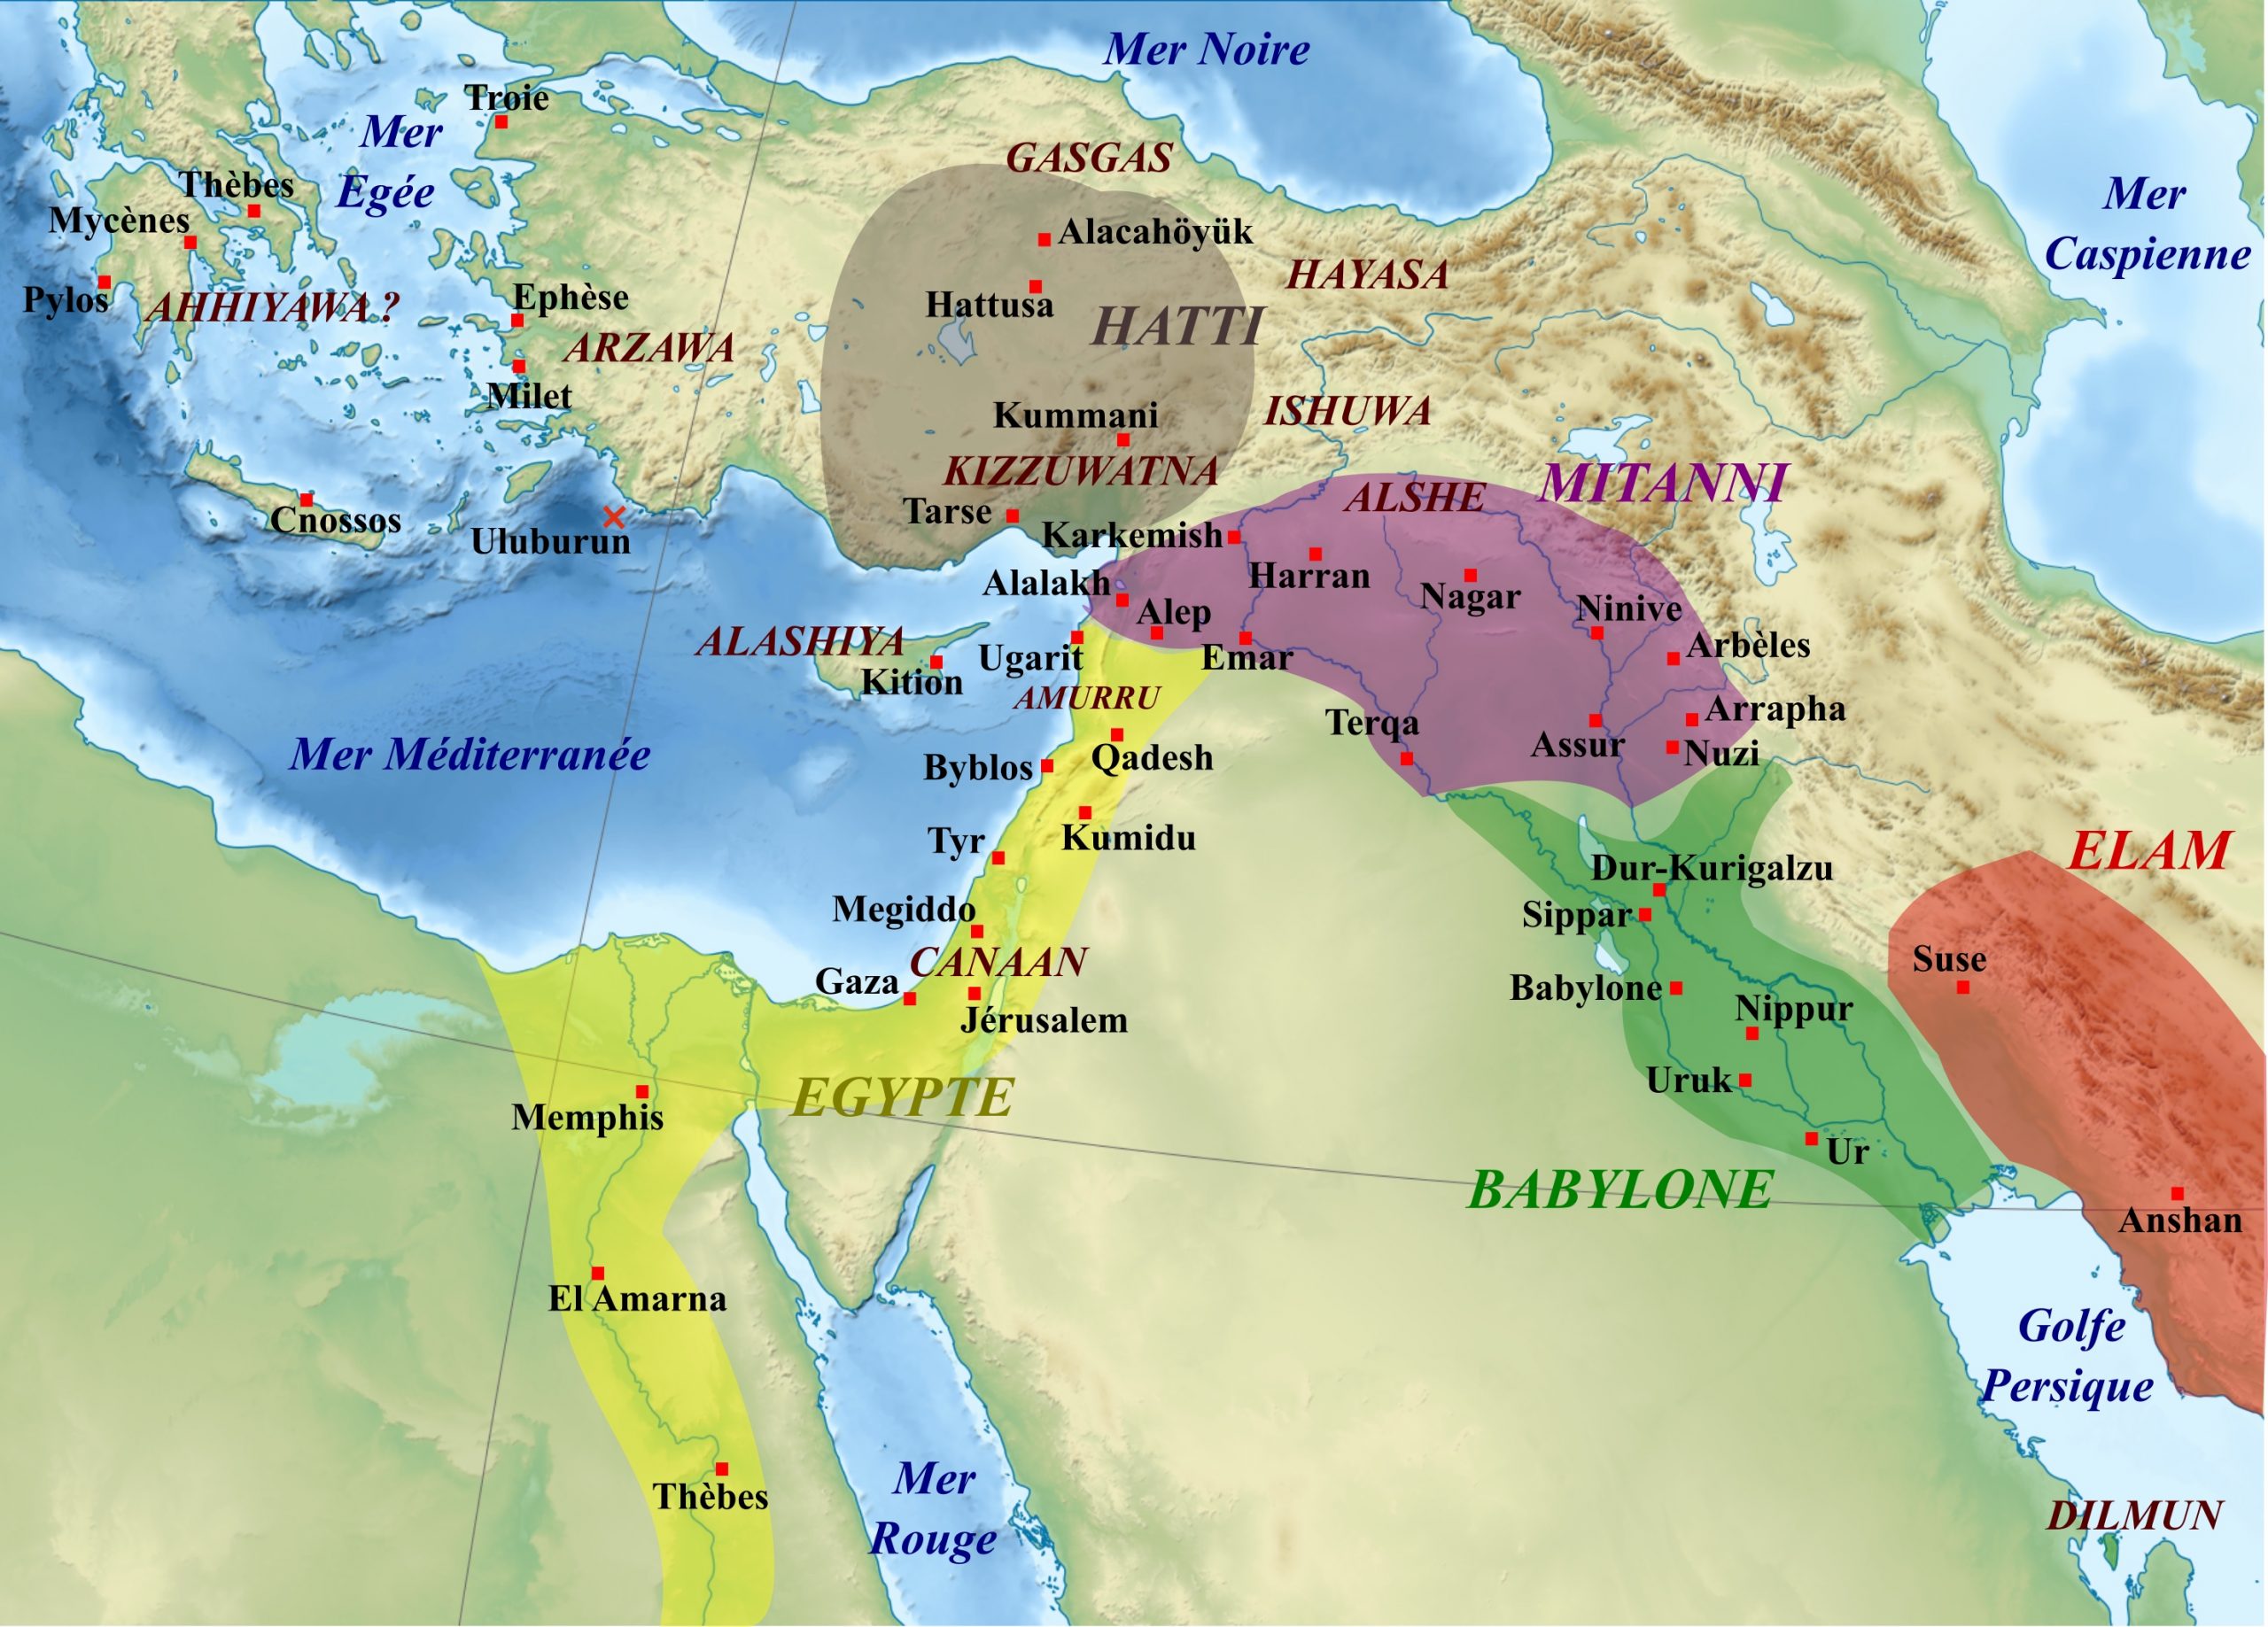 https://upload.wikimedia.org/wikipedia/commons/8/82/Moyen_Orient_Amarna_1.svg